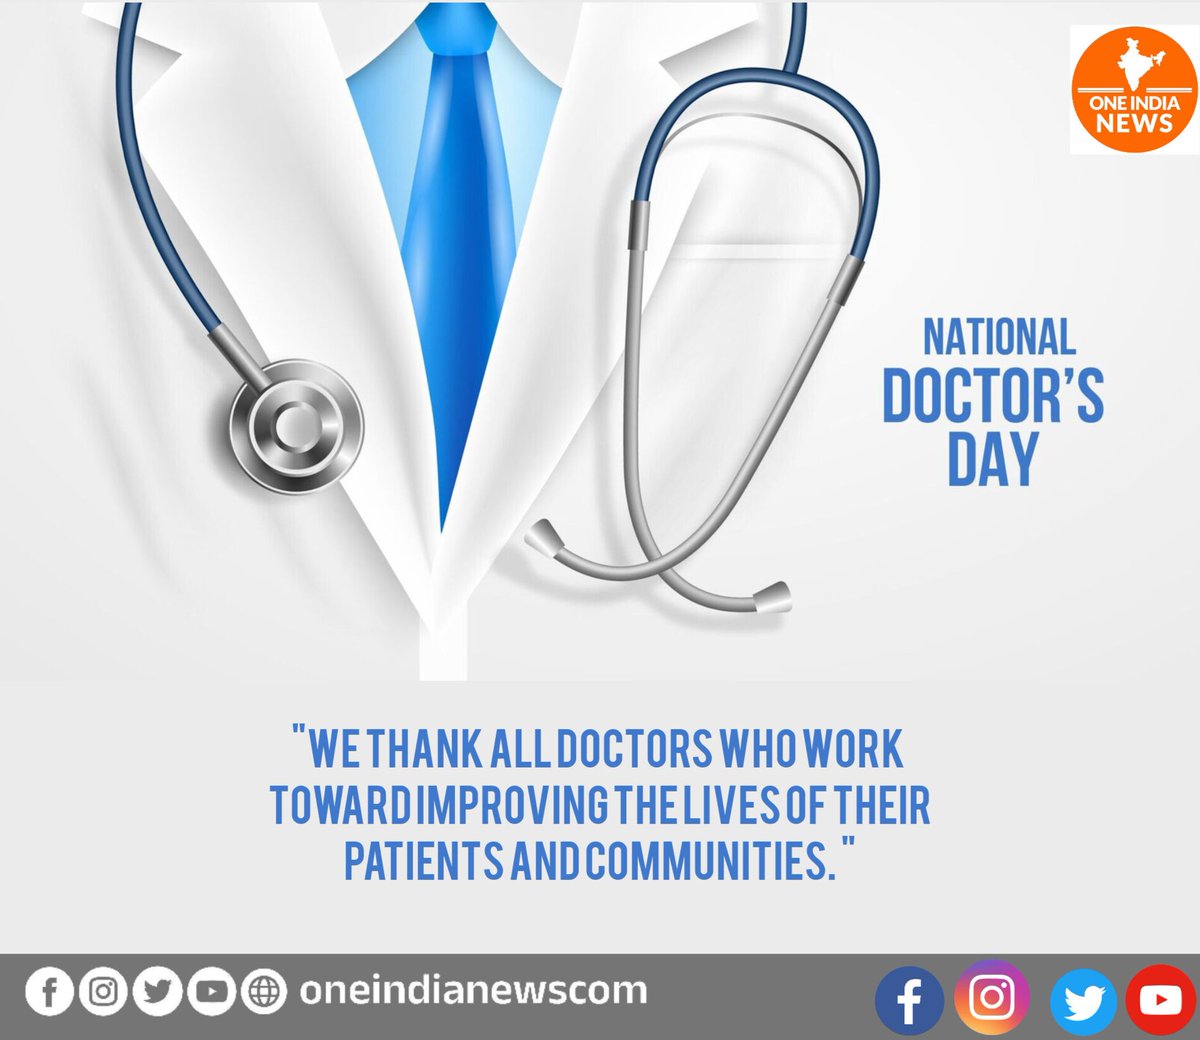 #DoctorsDay 
#NationalDoctorsDay #NationalDoctorsDay2023 #doctor #DoctorsDay2023 #doctorday #doctorslife #DoctorAppreciation